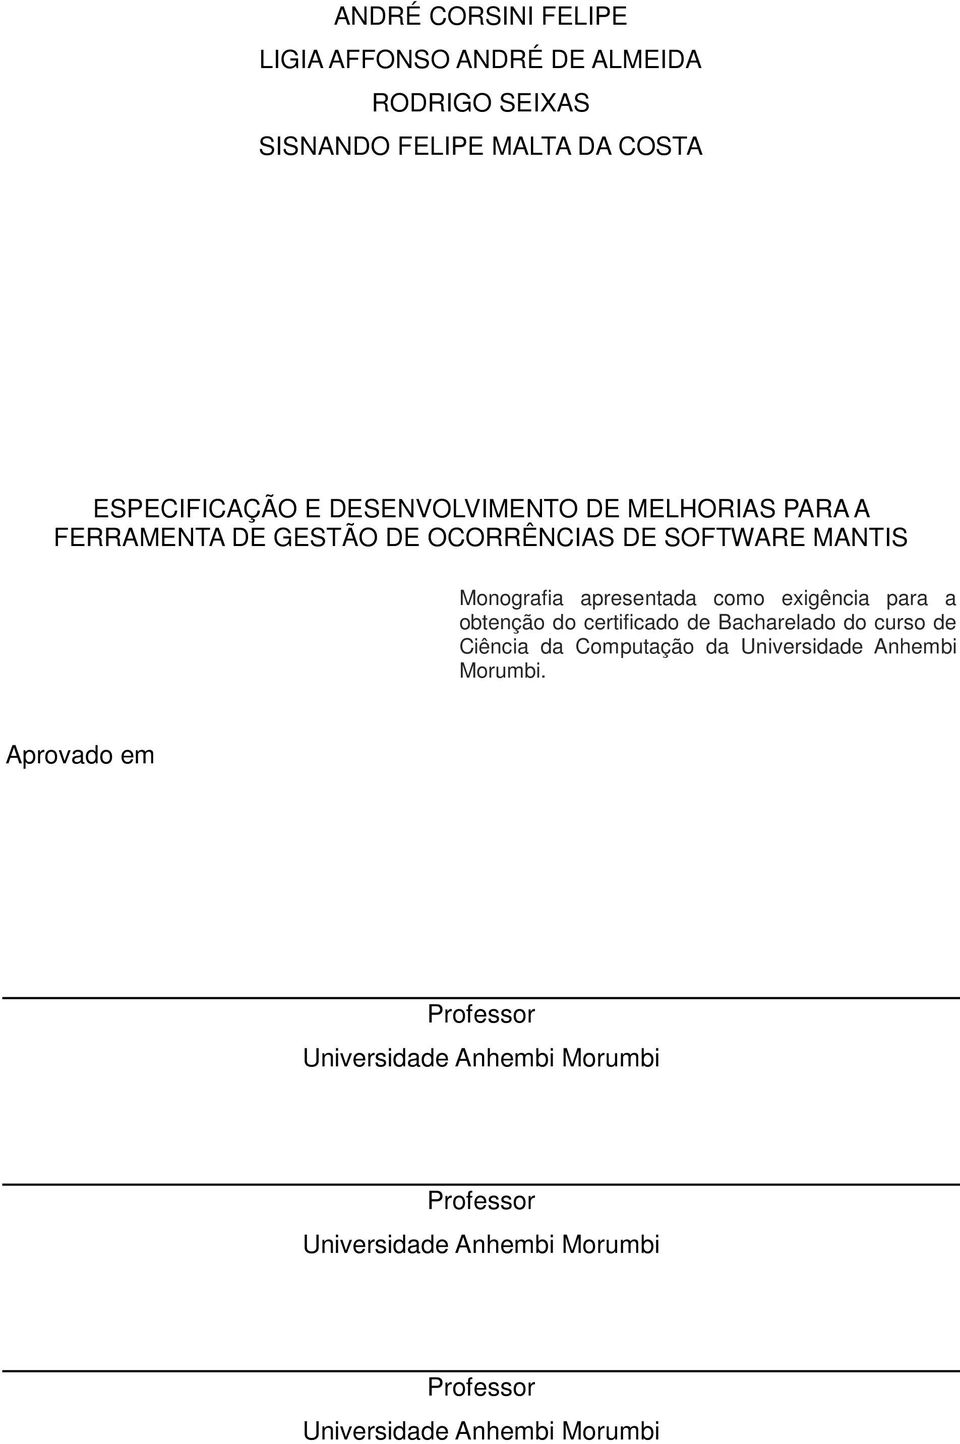 exigência para a obtenção do certificado de Bacharelado do curso de Ciência da Computação da Universidade Anhembi